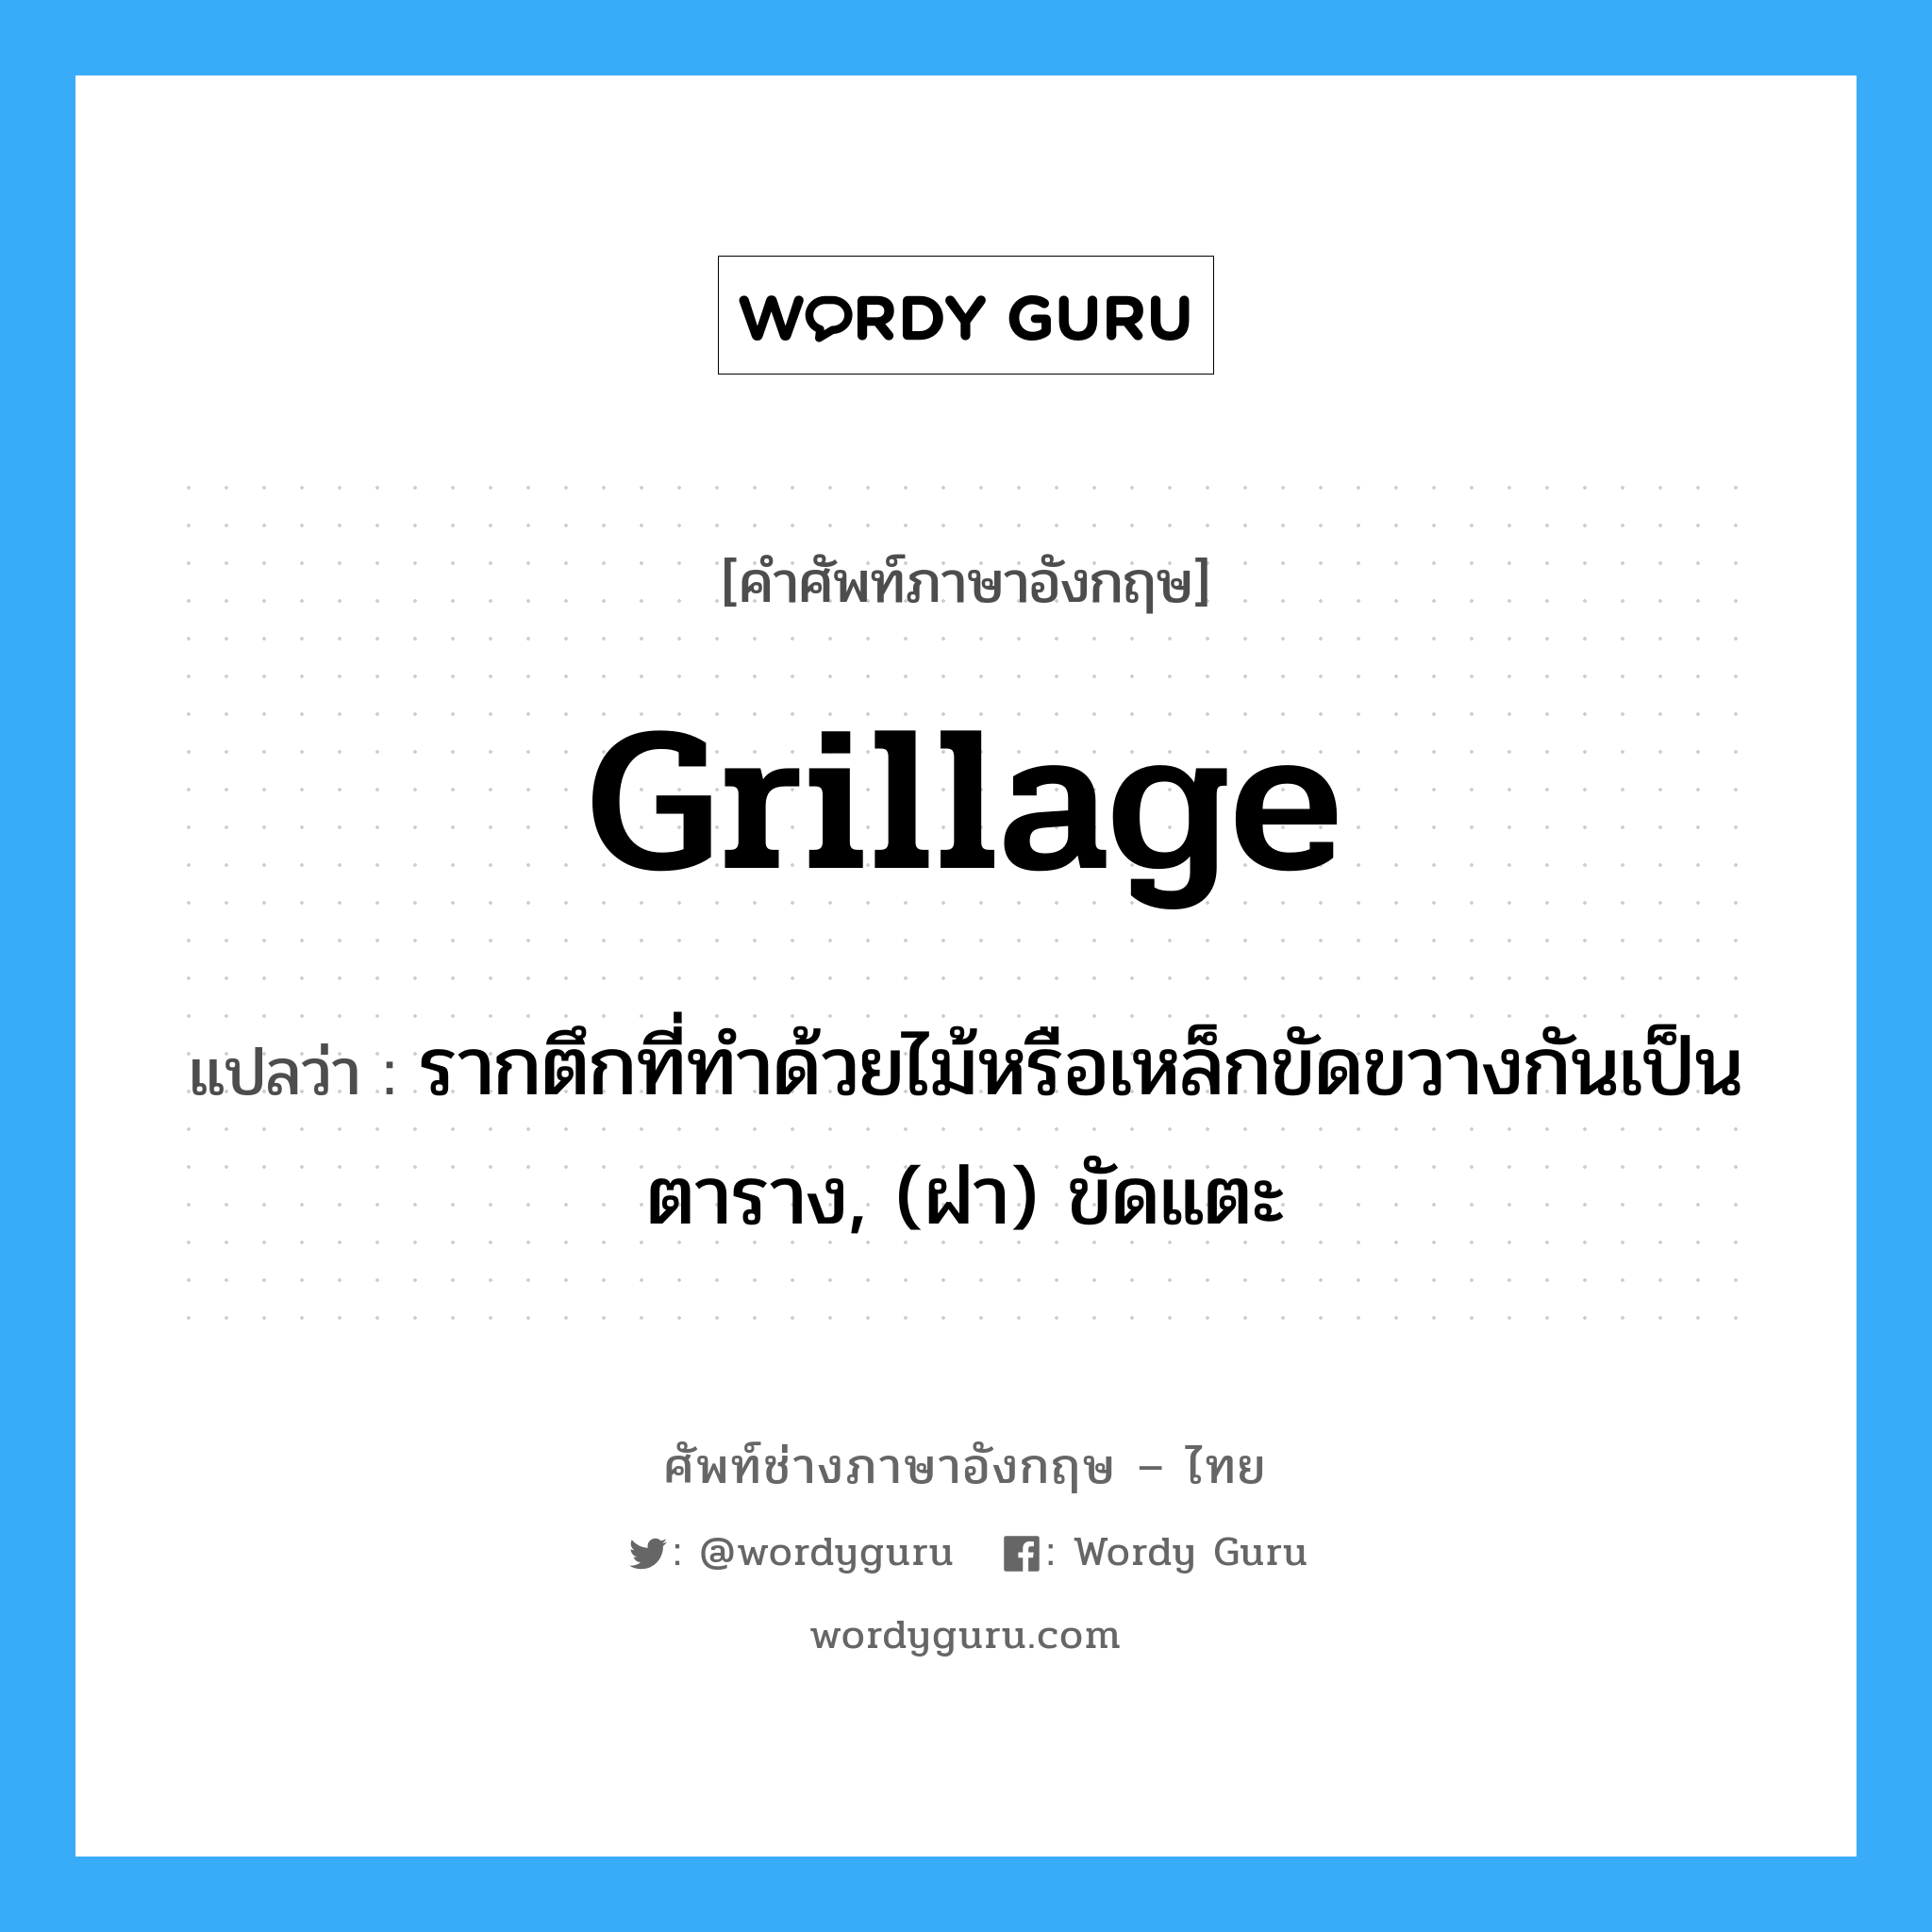 grillage แปลว่า?, คำศัพท์ช่างภาษาอังกฤษ - ไทย grillage คำศัพท์ภาษาอังกฤษ grillage แปลว่า รากตึกที่ทำด้วยไม้หรือเหล็กขัดขวางกันเป็นตาราง, (ฝา) ขัดแตะ